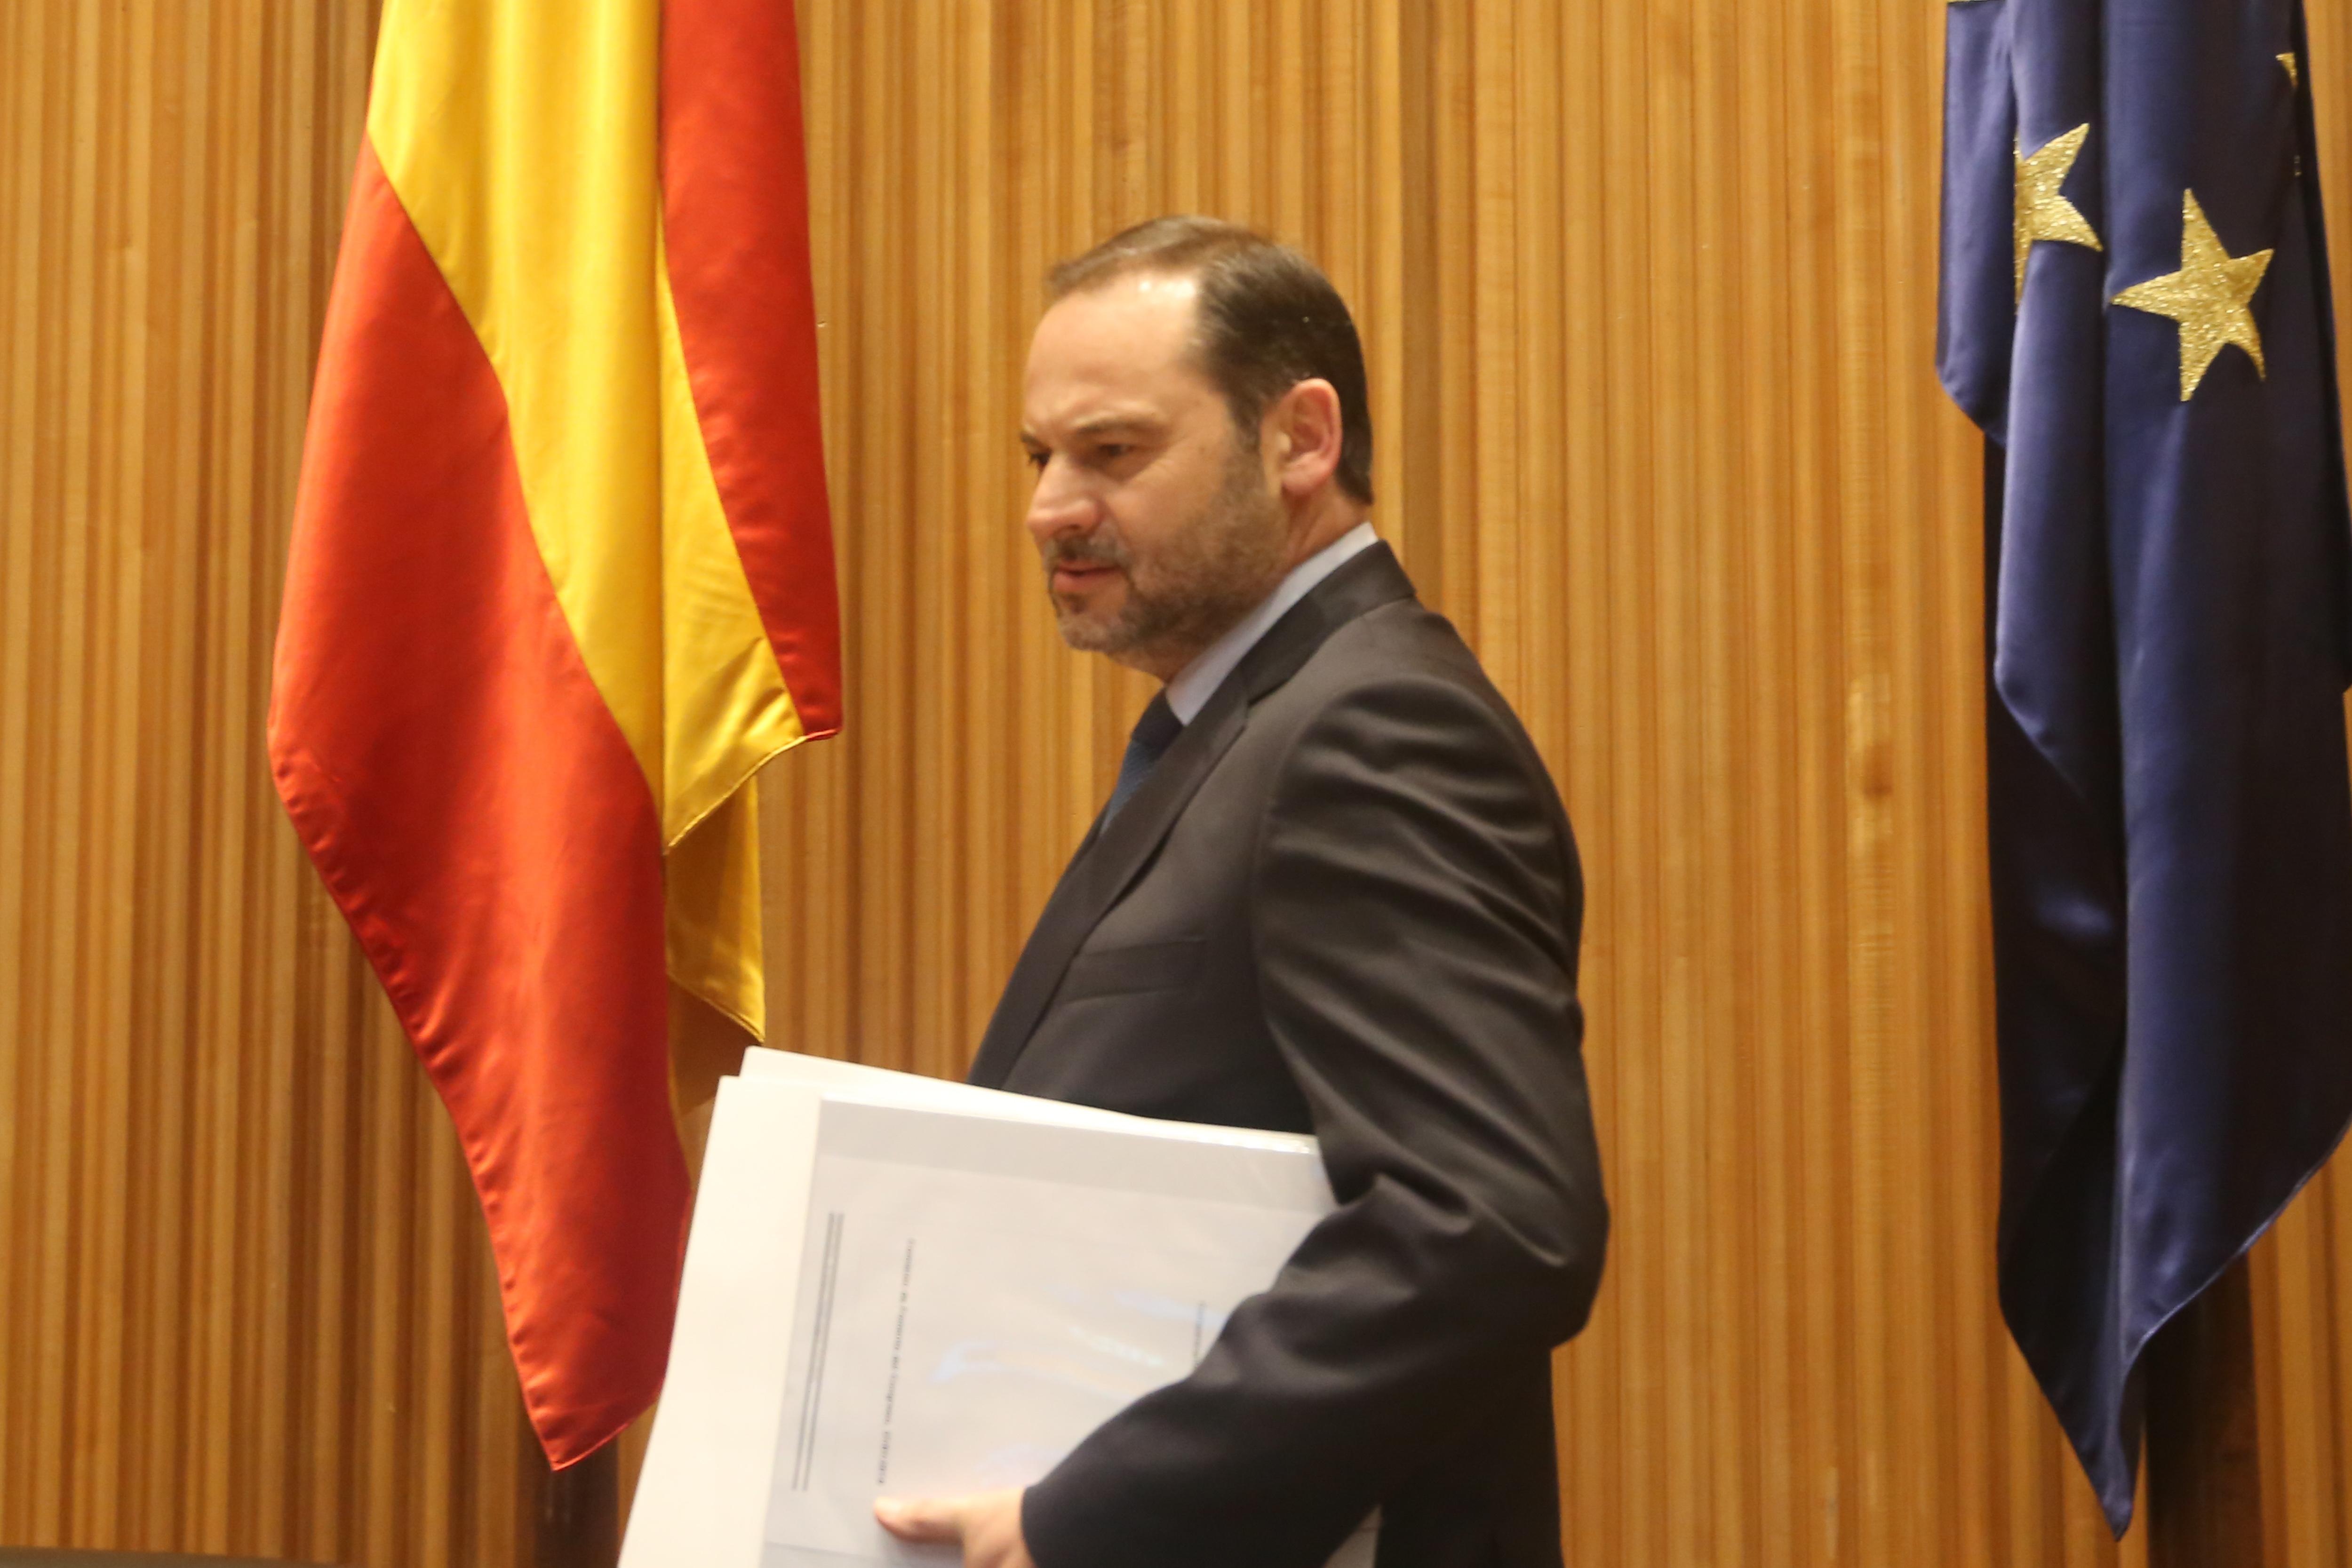 El ministro de Fomento, José Luis Ábalos, comparece a petición propia en el Congreso